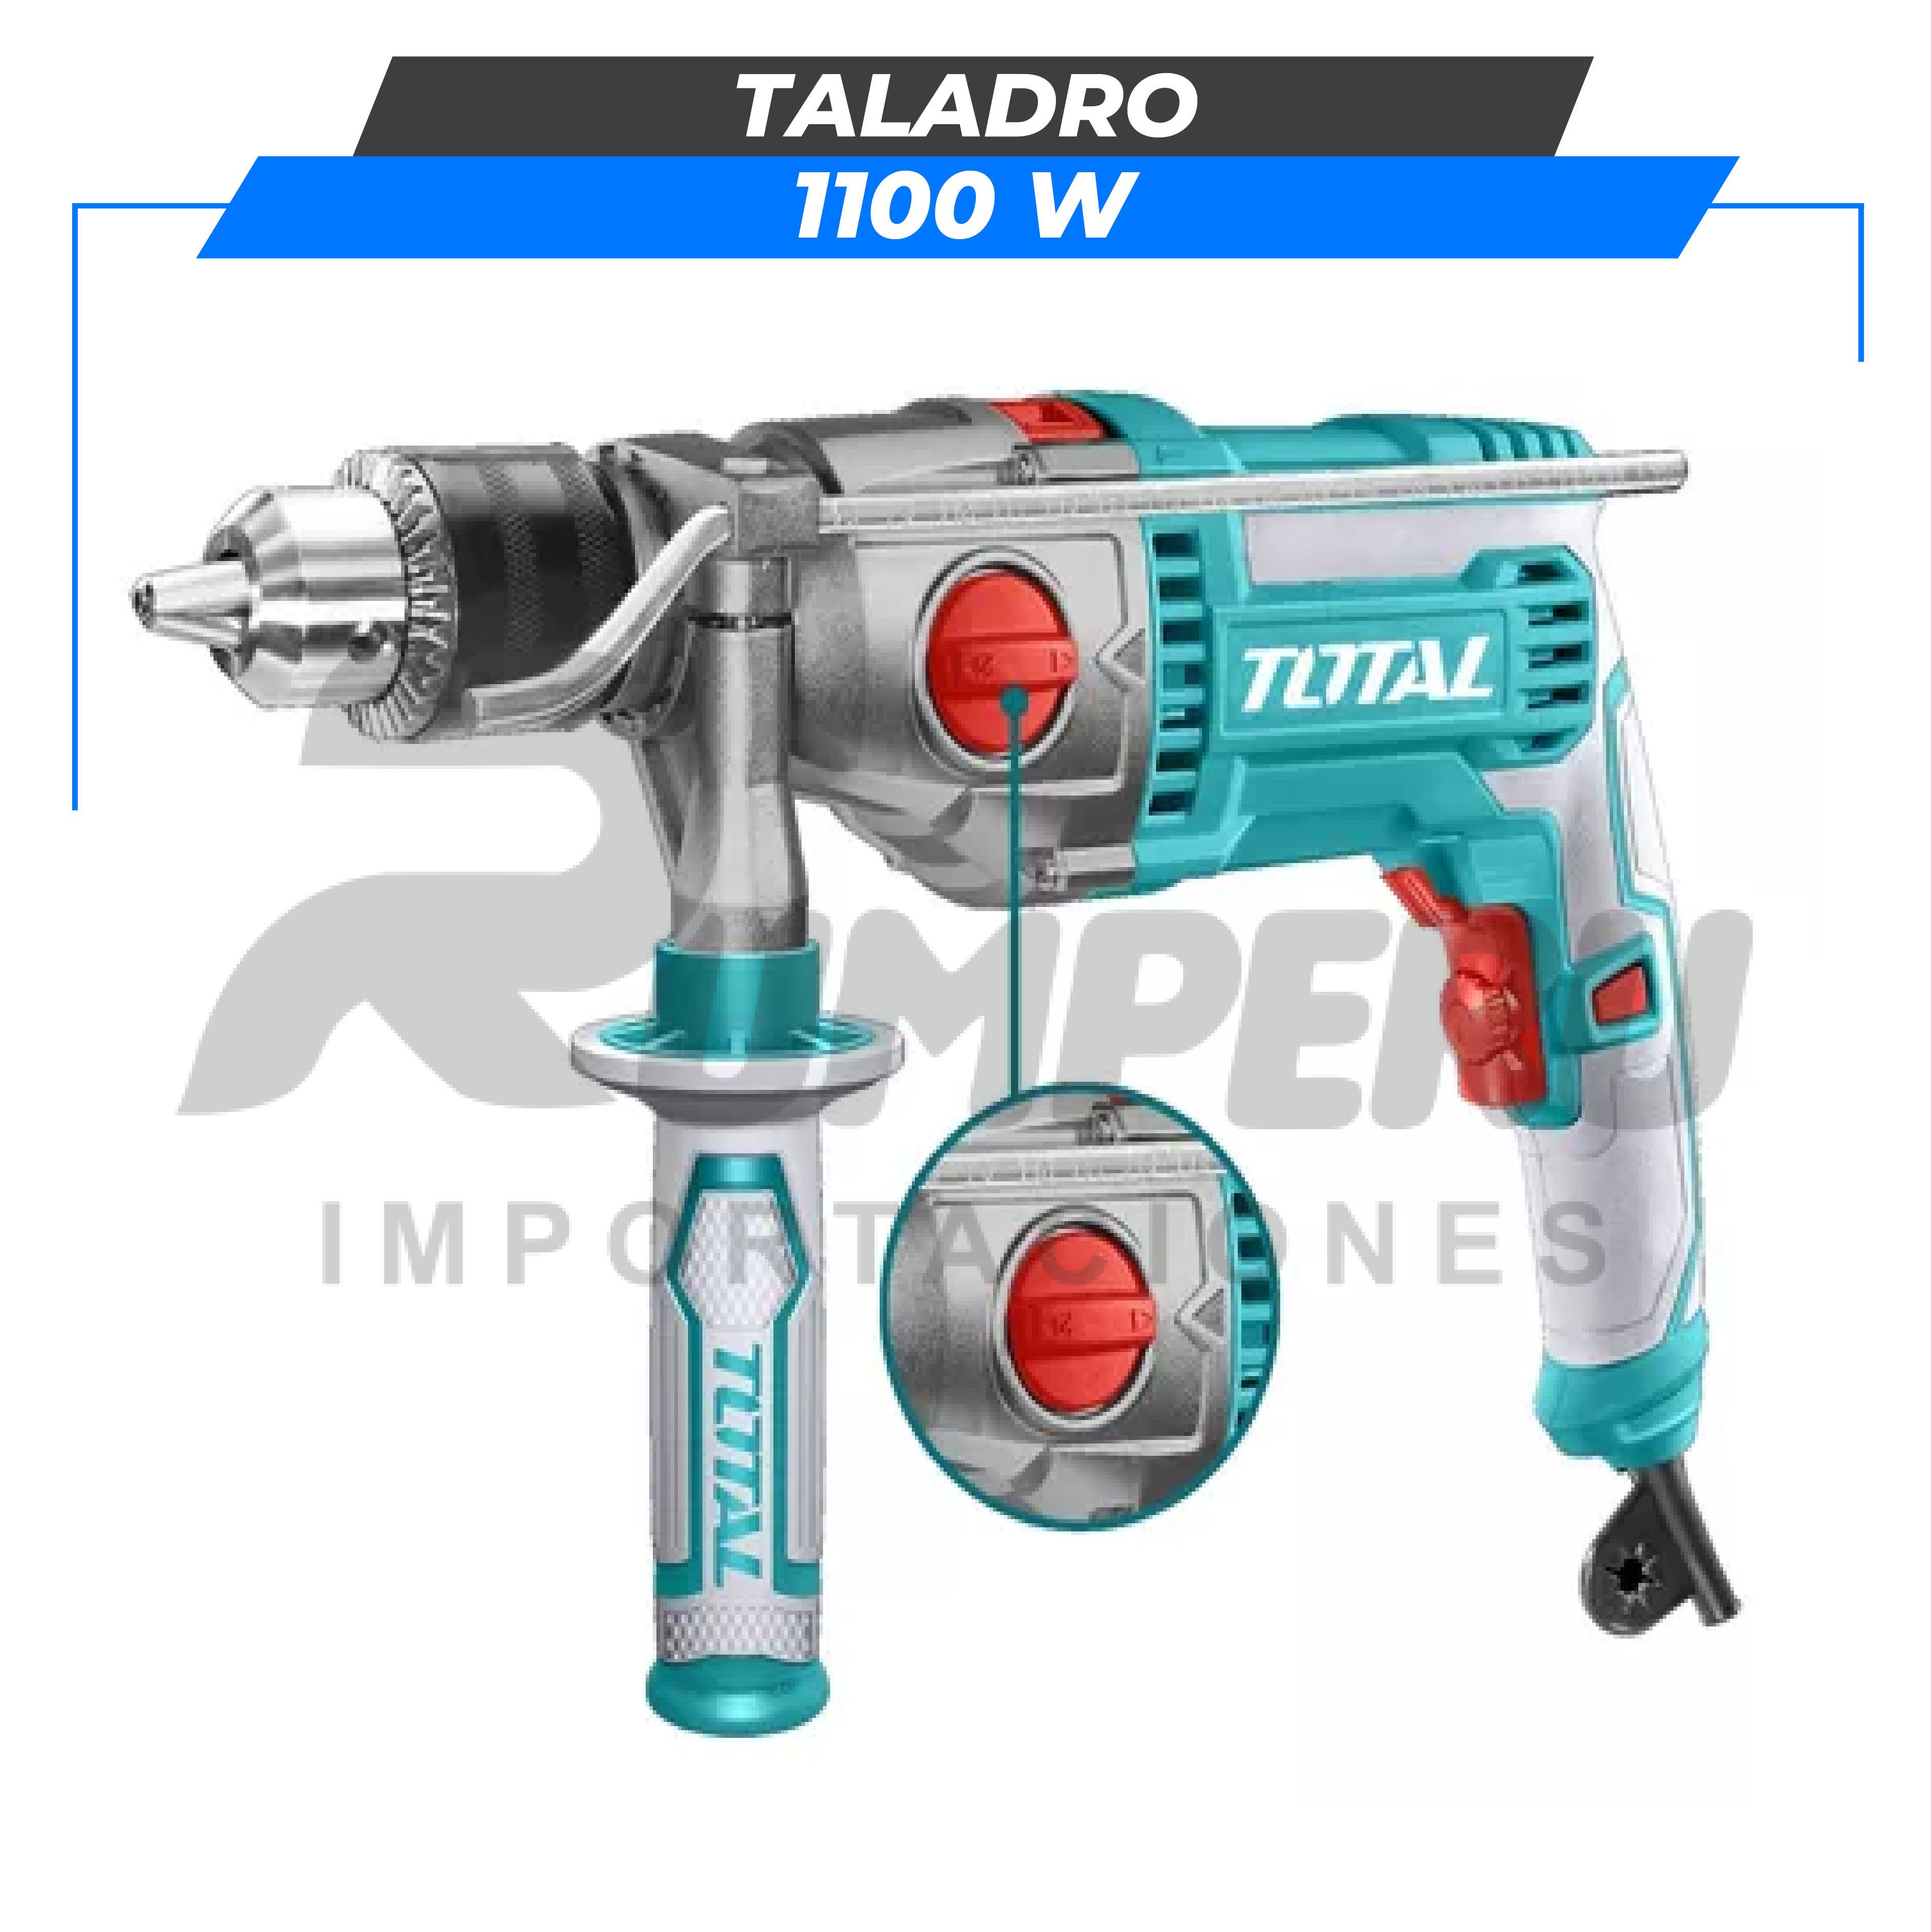 Taladro 1100W